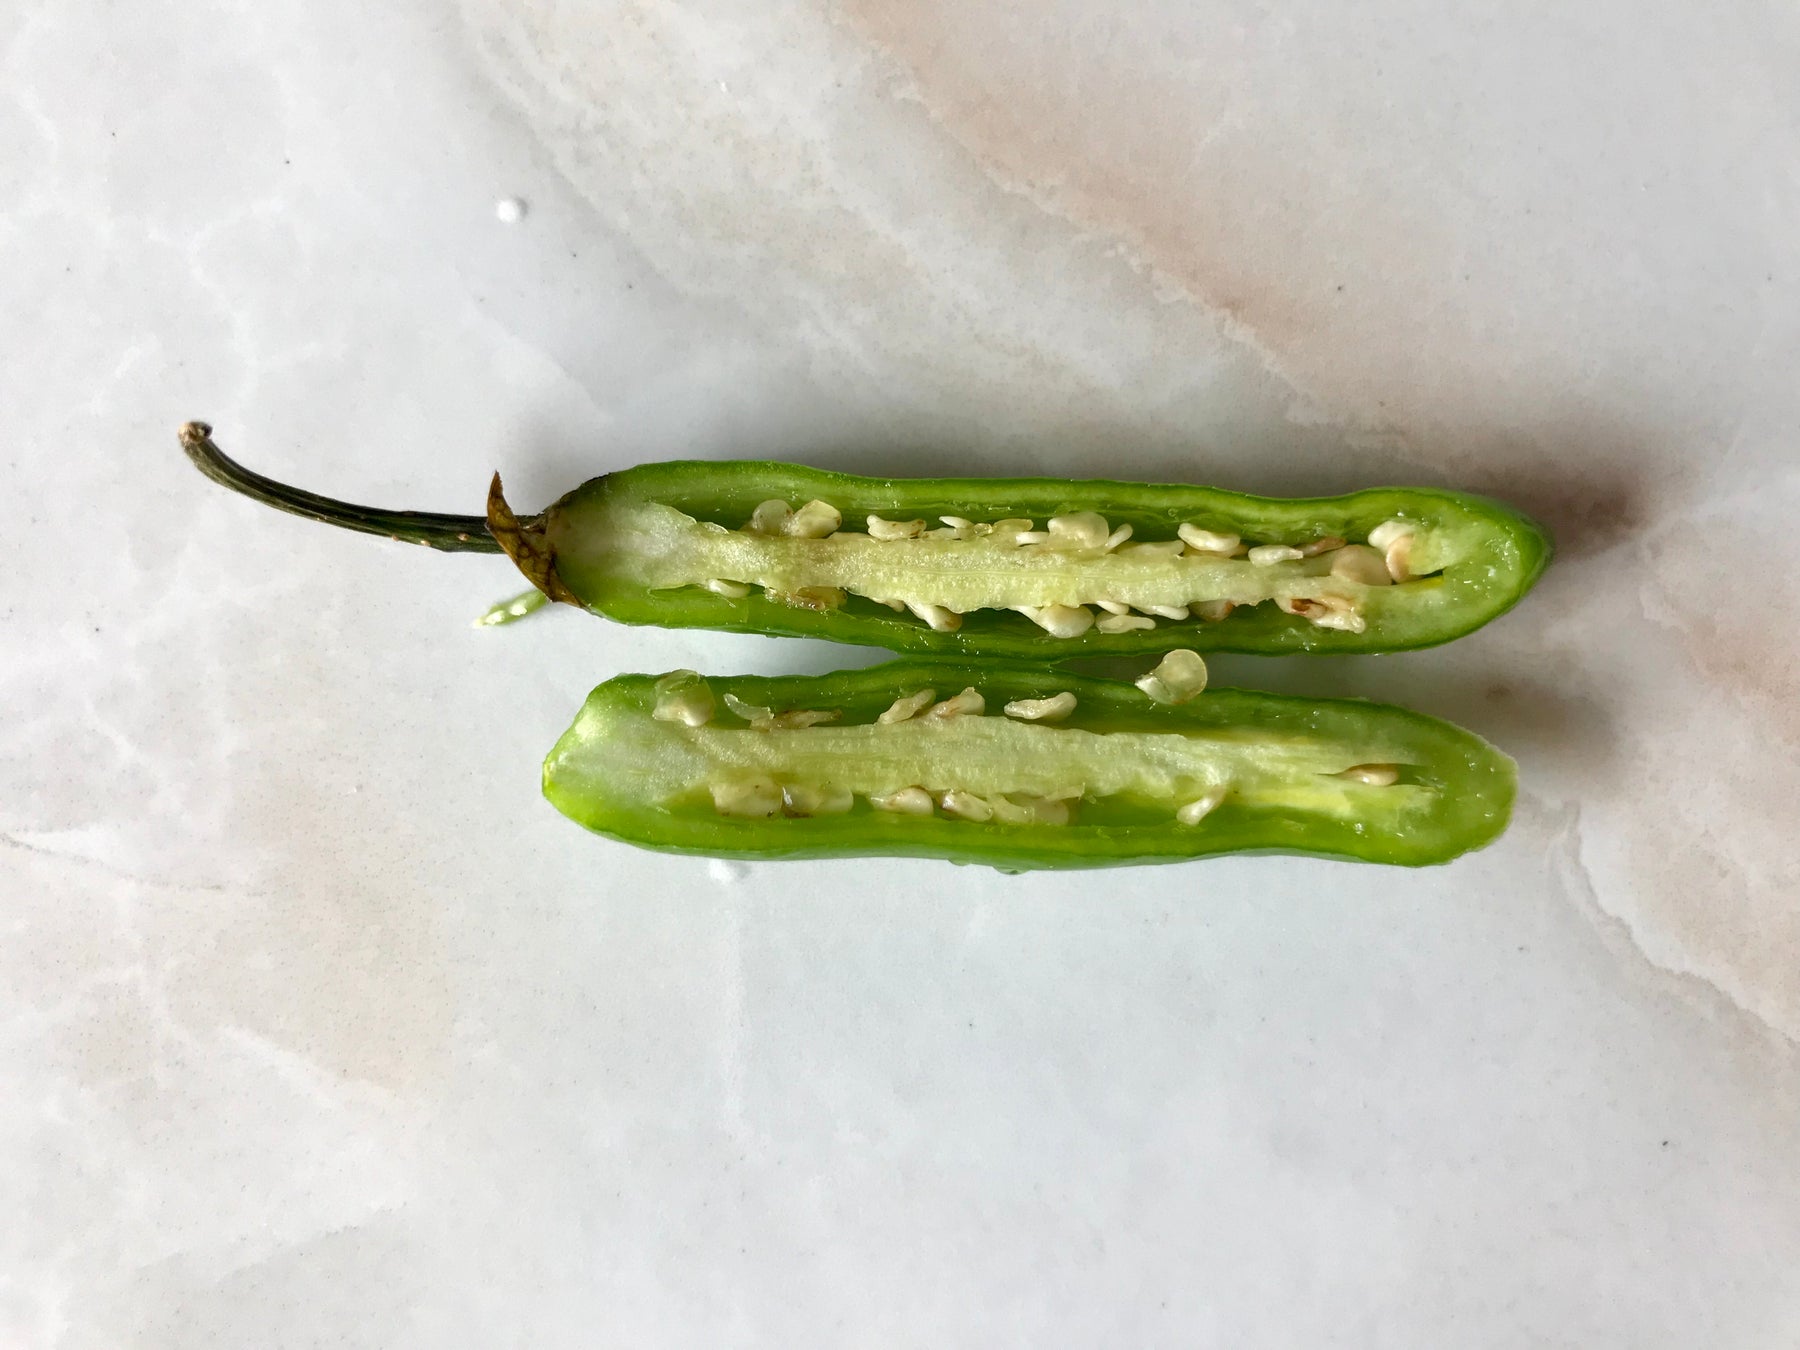 Sliced green serrano chili pepper - Mexico 1492